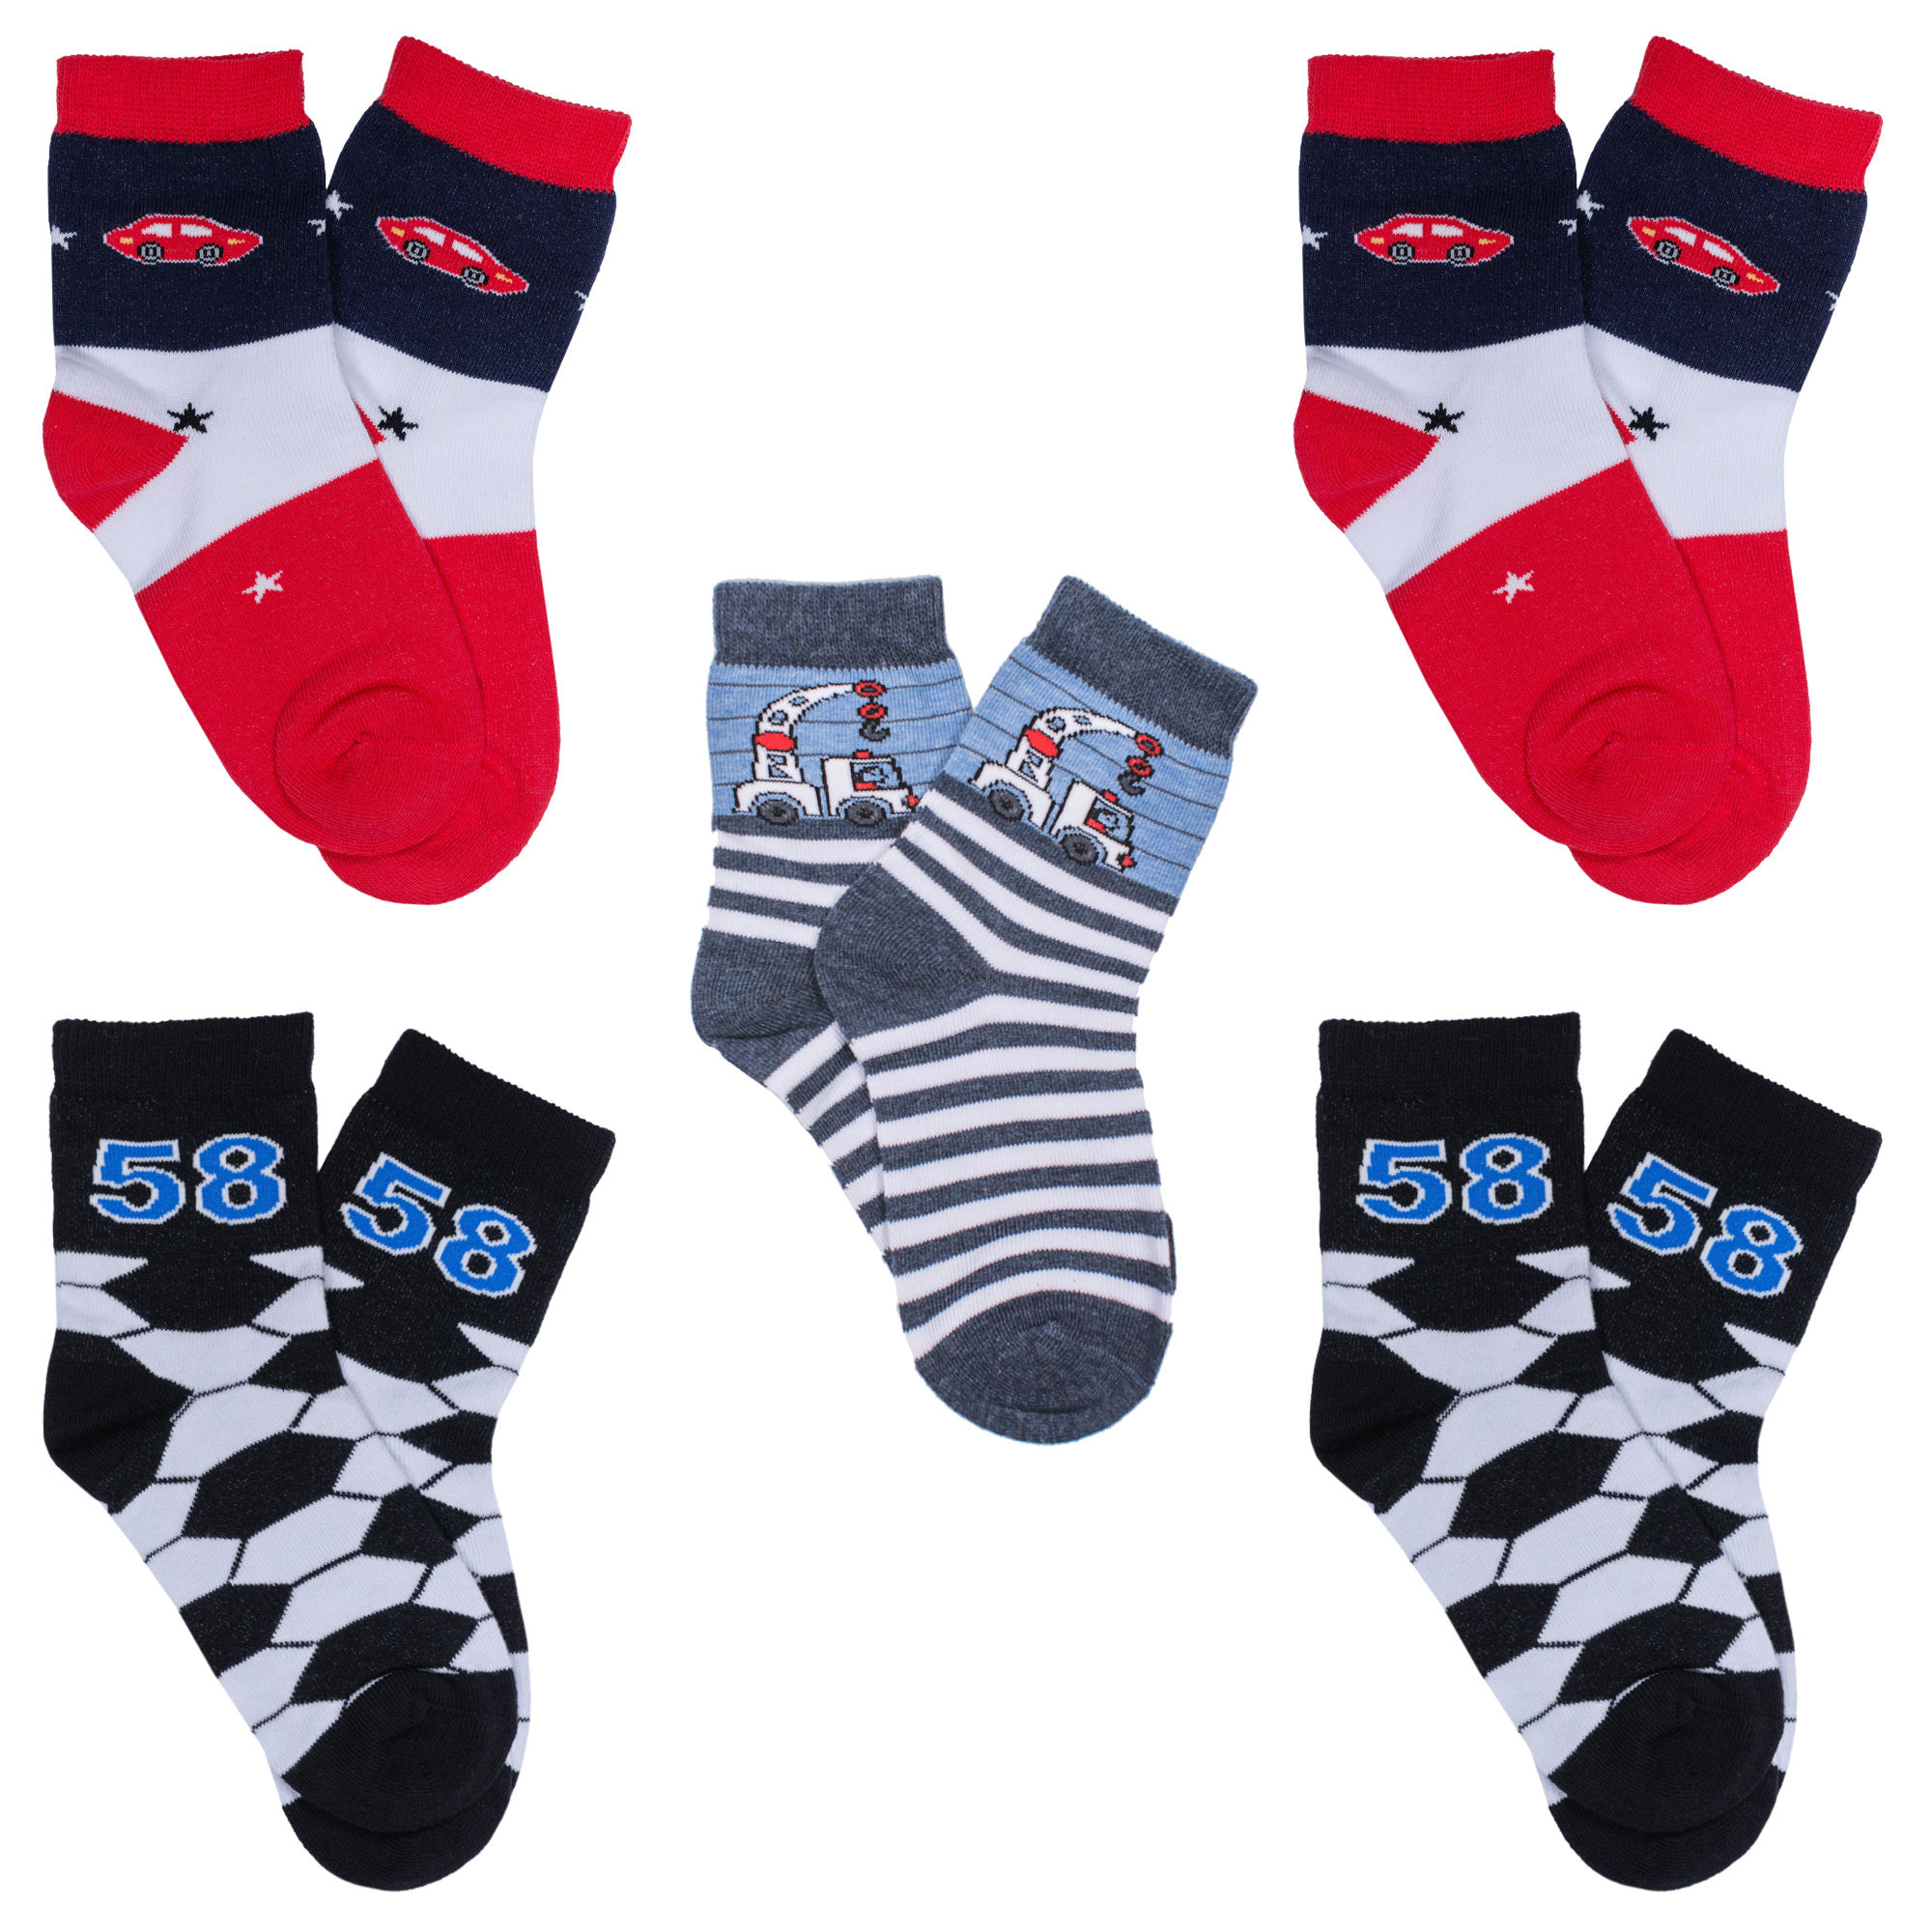 Носки детские Rusocks 5-Д-86 цв. черный; красный; синий; белый р. 12-14 носки с рисунками st friday socks купание красного коня синий